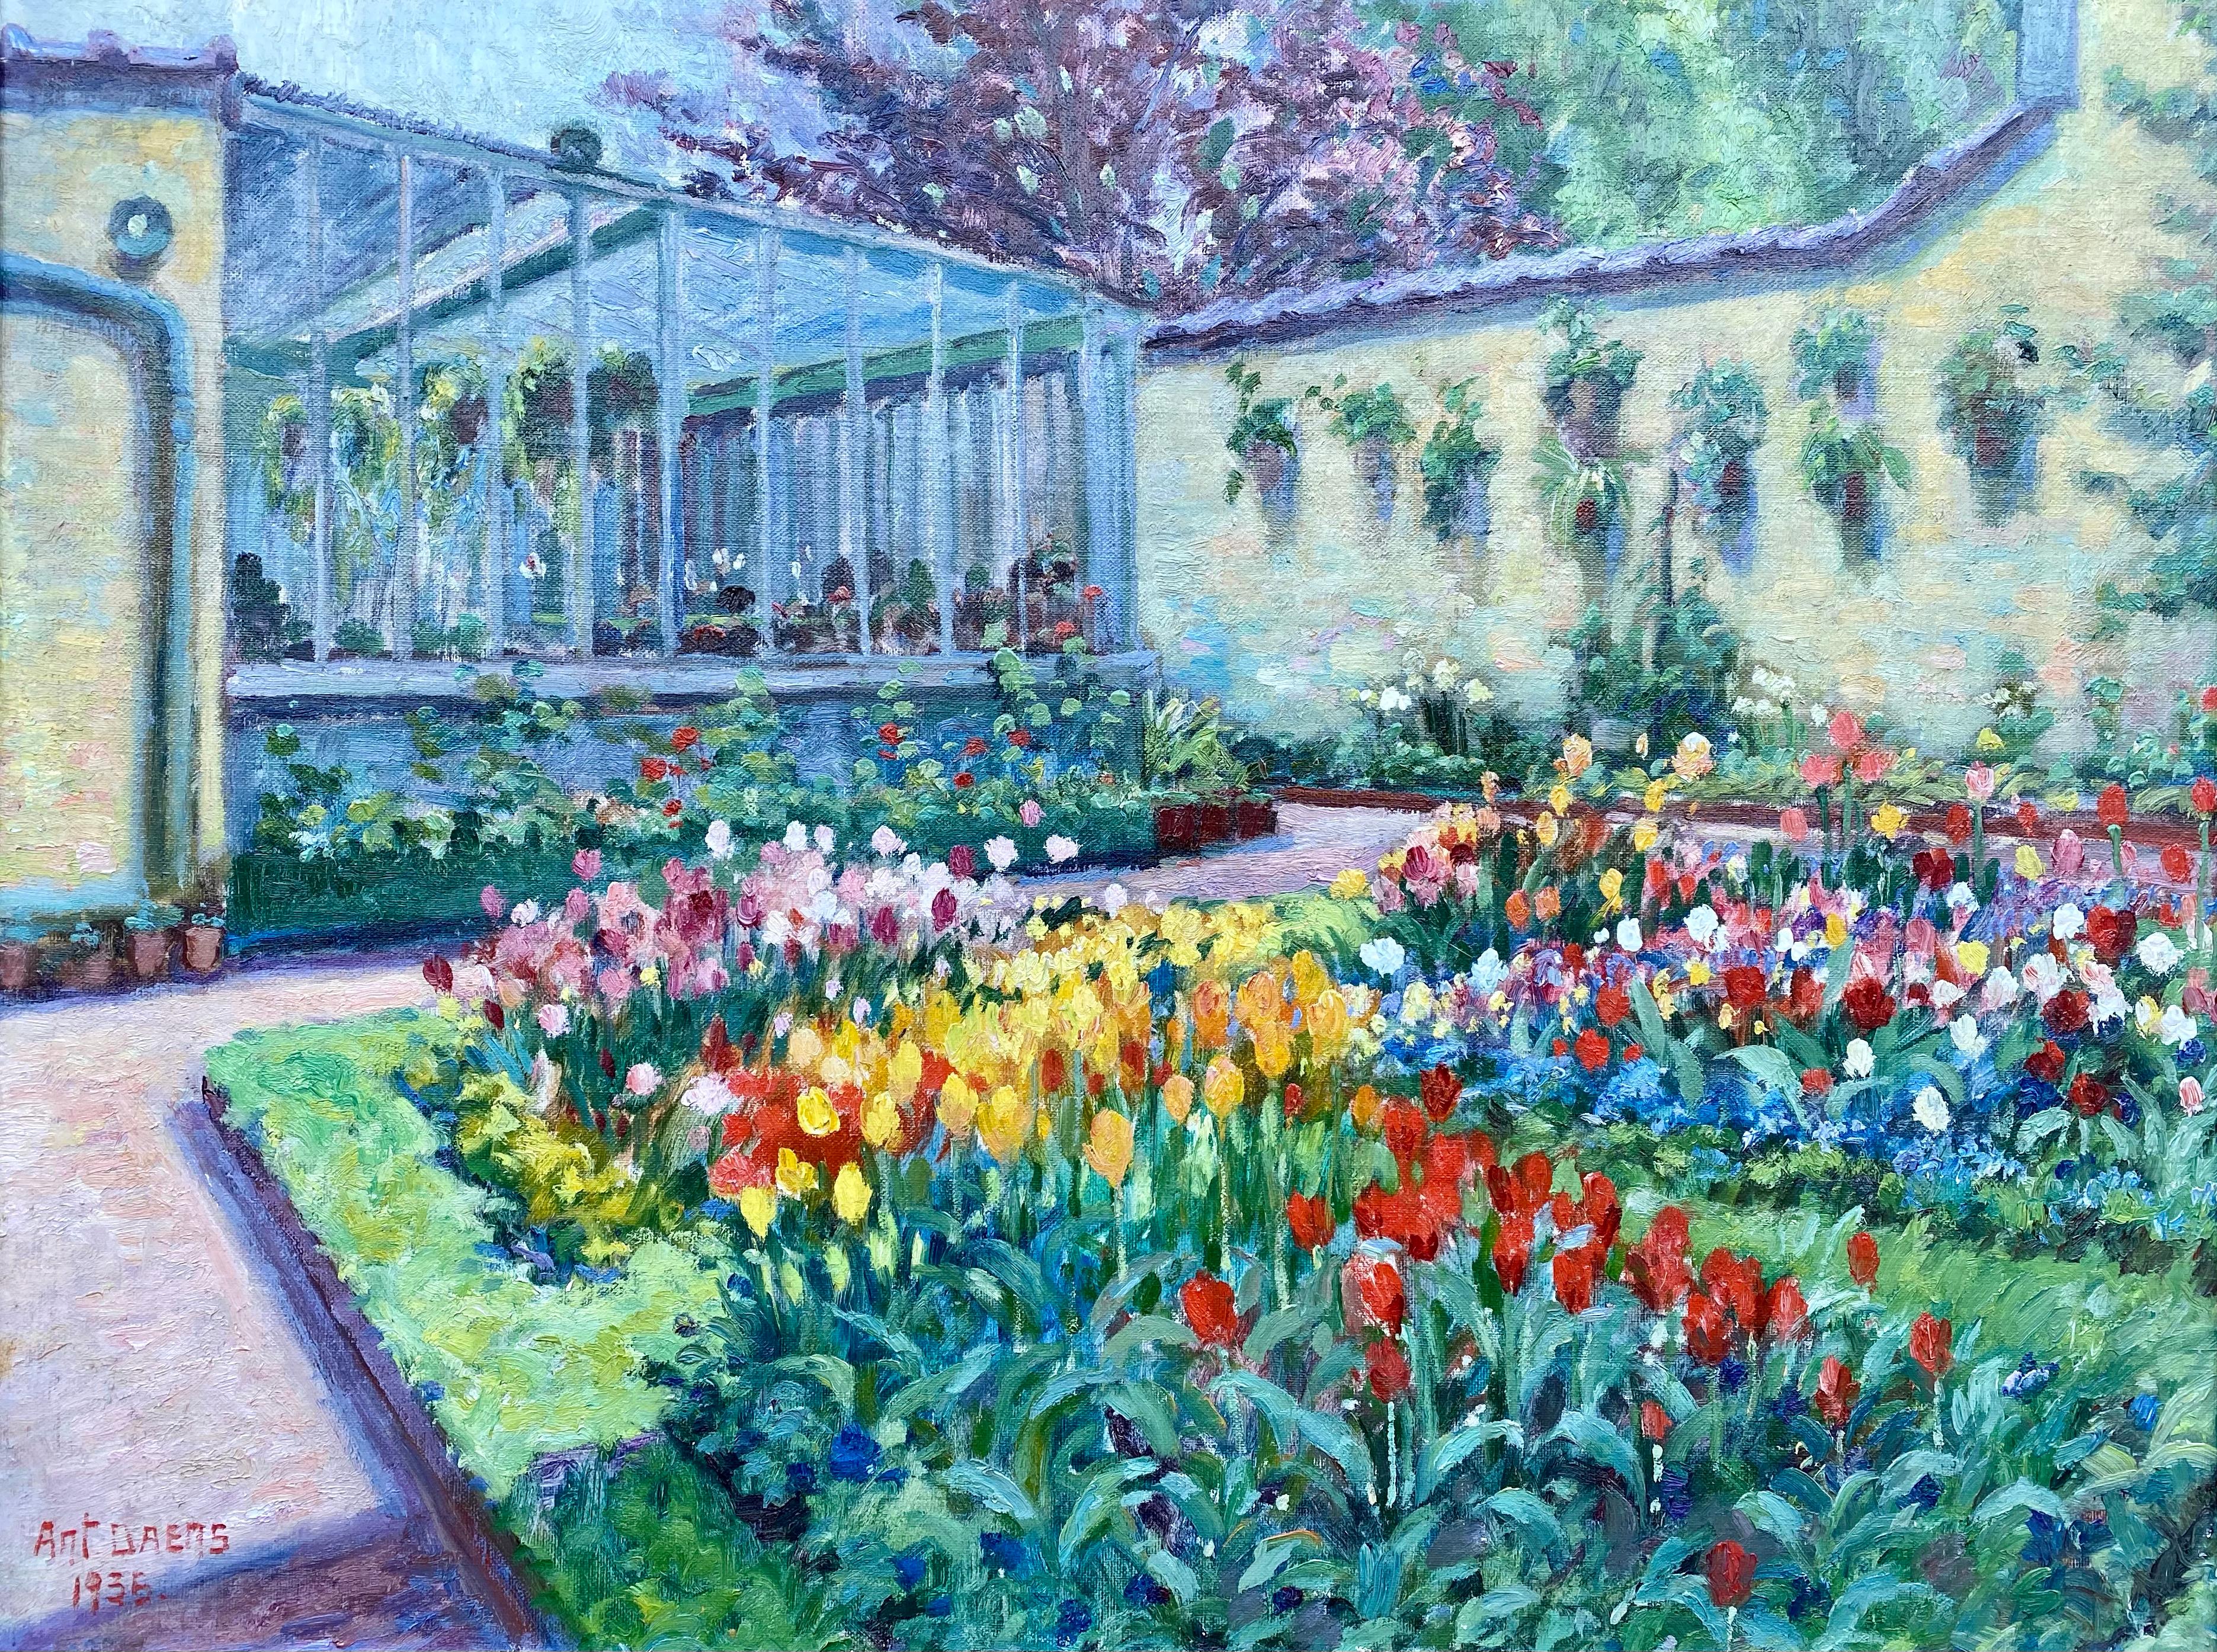 Un jardin avec des tulipes, Antoine Daens, Bruxelles 1871 - 1946, Belge, Signé - Painting de Daens Antoine